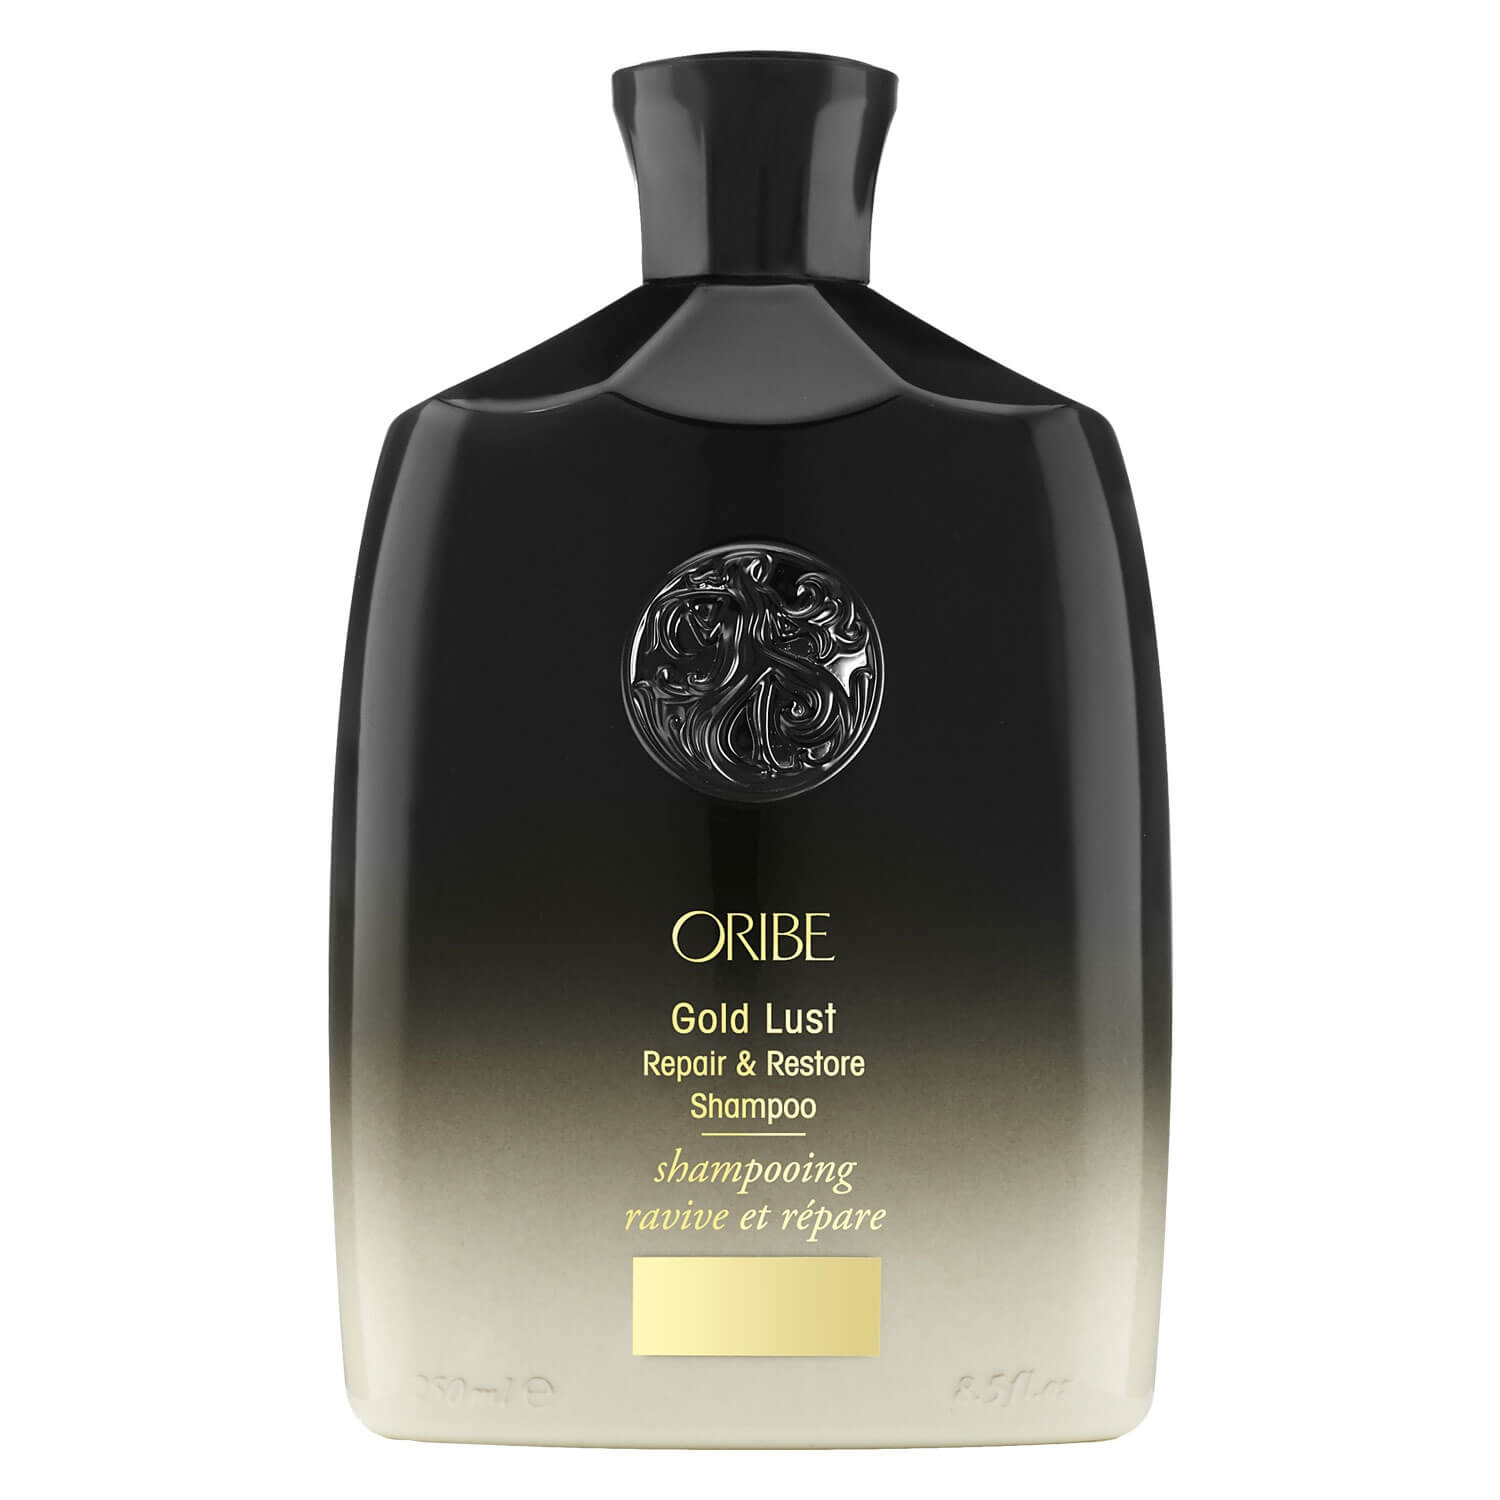 Produktbild von Oribe Care - Gold Lust Repair & Restore Shampoo